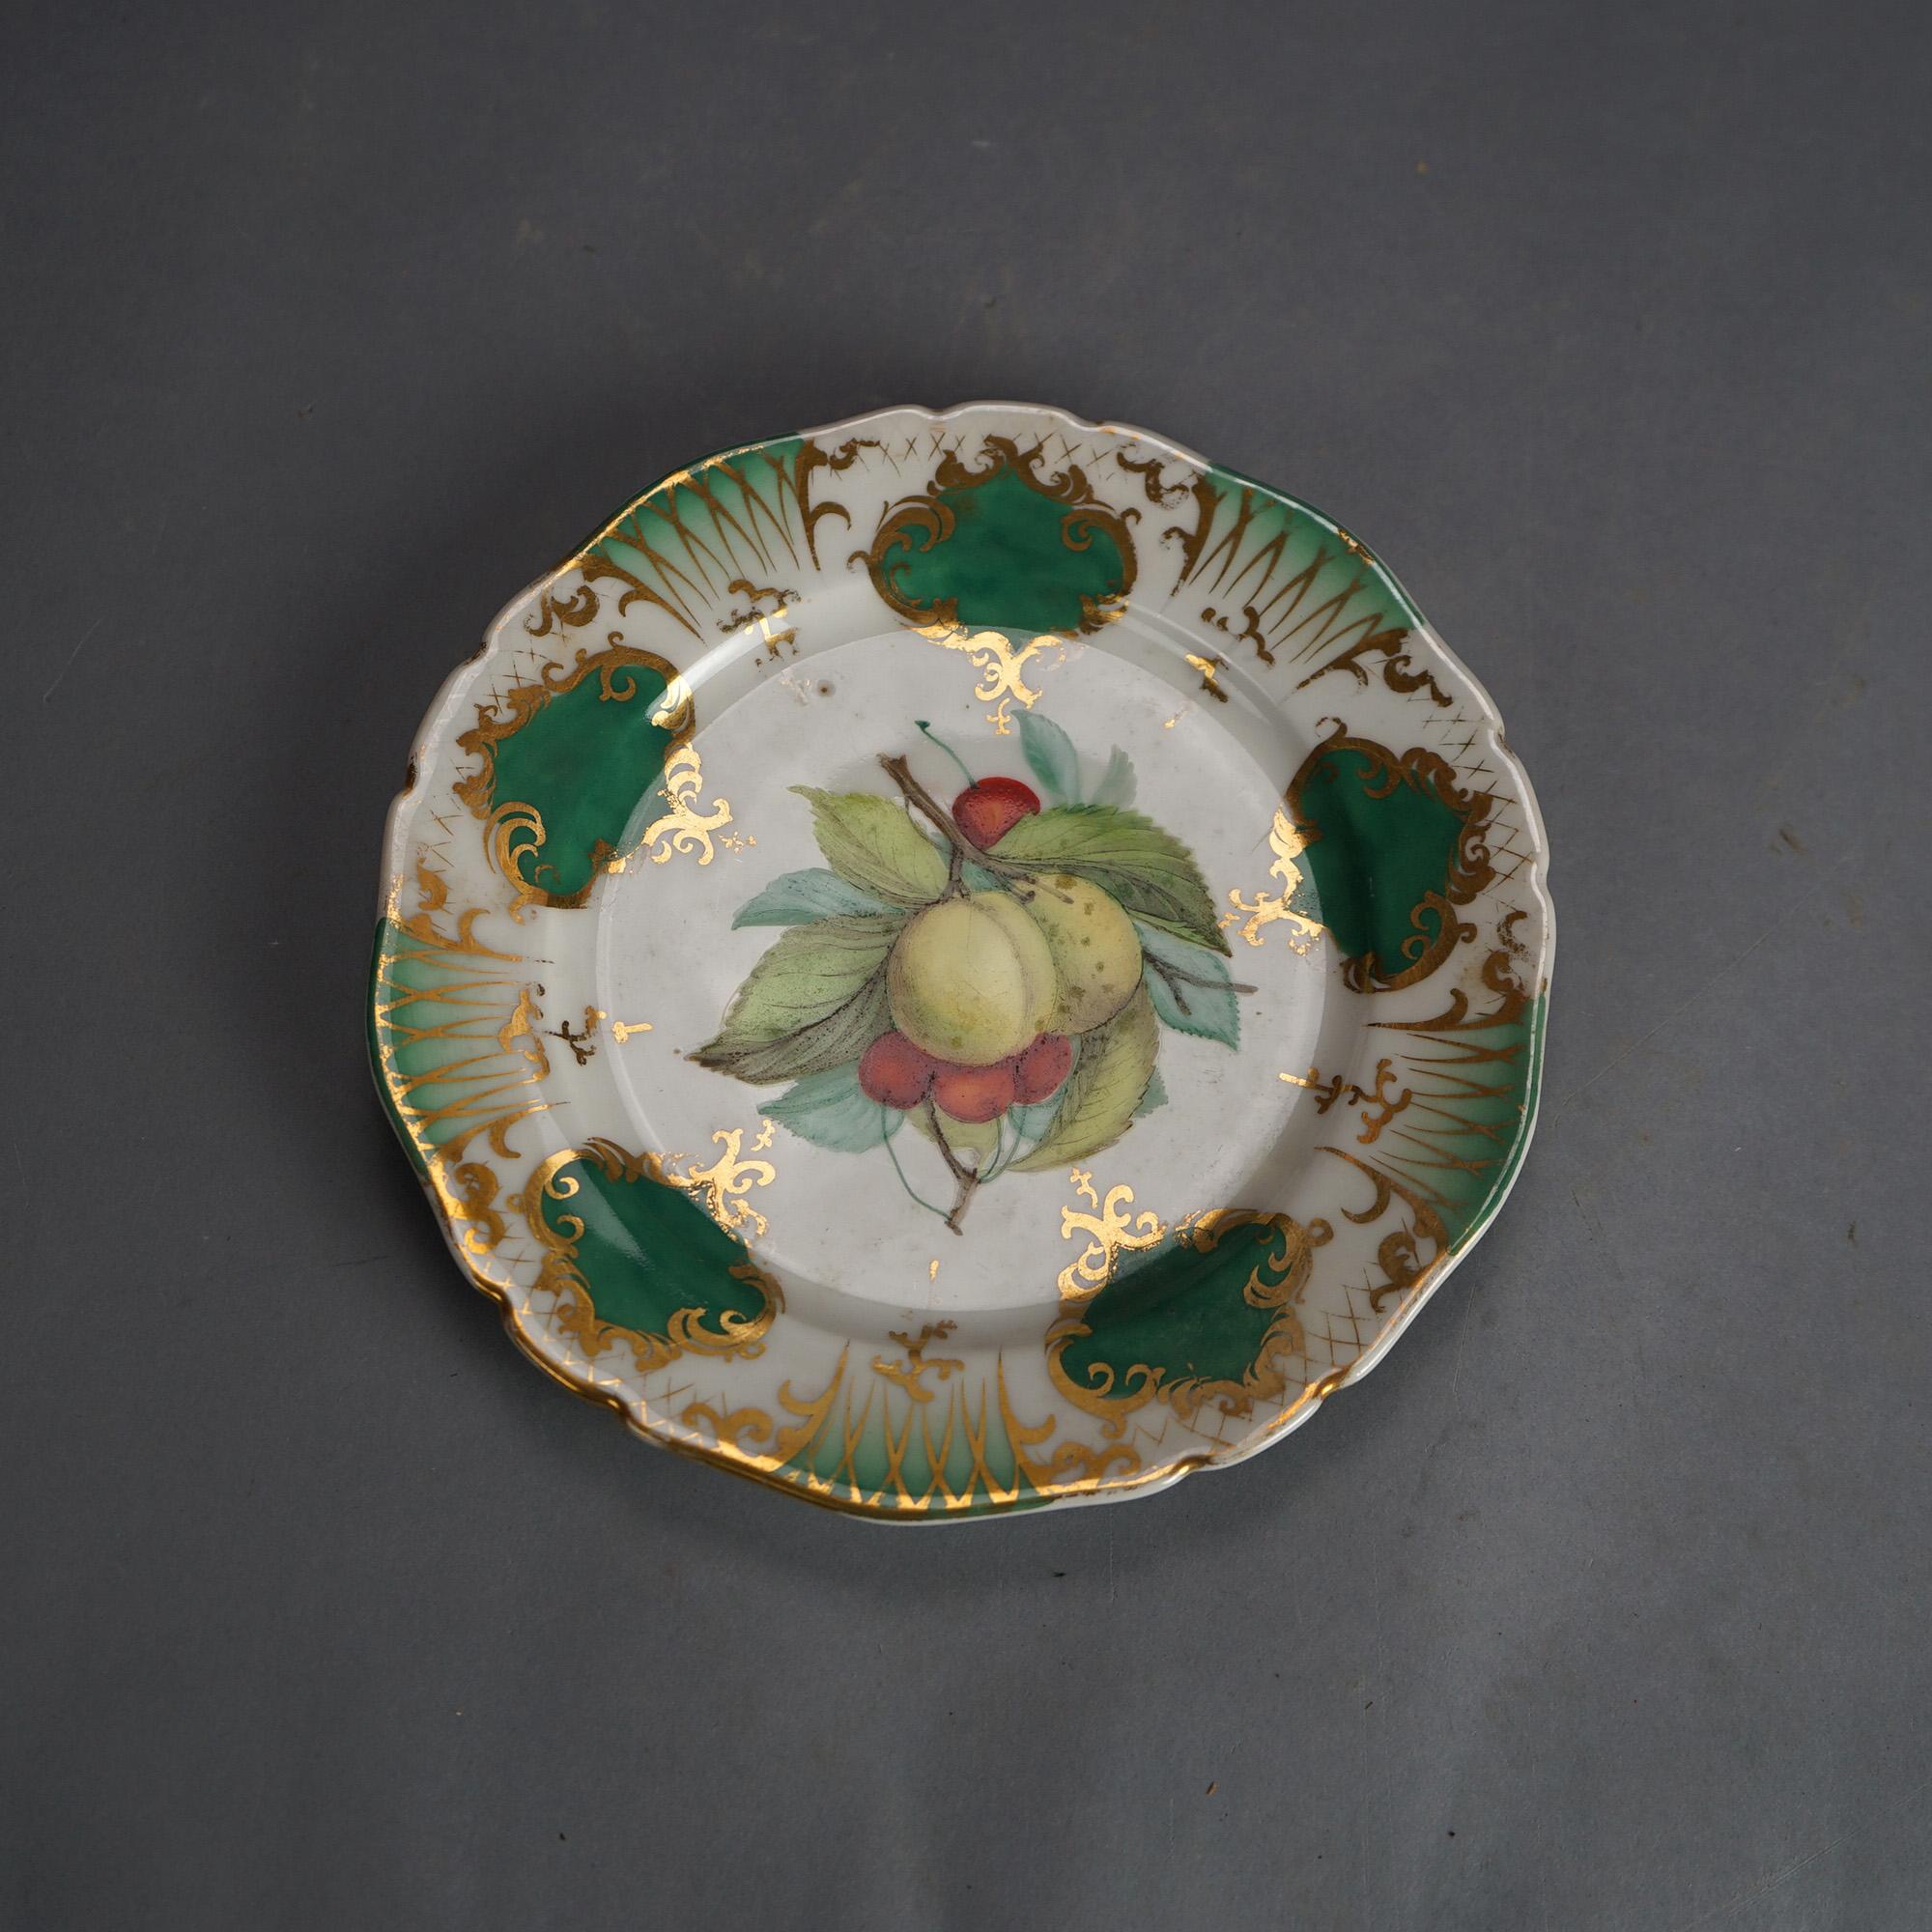 Six Antique Old Paris Porcelain Plates with Fruit Decoration & Gilt Highlights C1890

Measures - 1